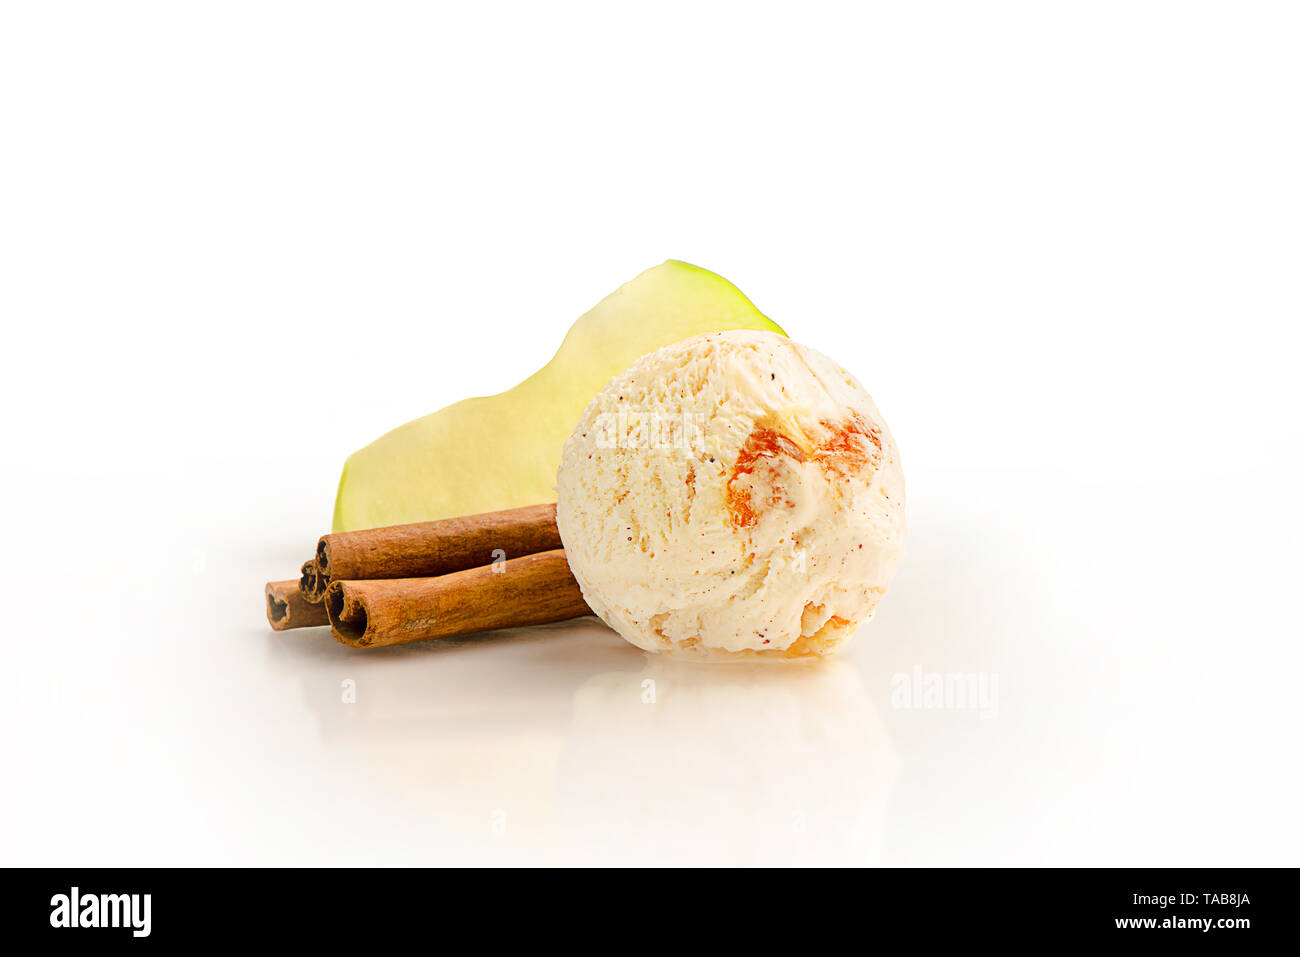 Bola de helado, manzana y canela sabor con ingredientes, aislado en un fondo blanco. Foto de stock